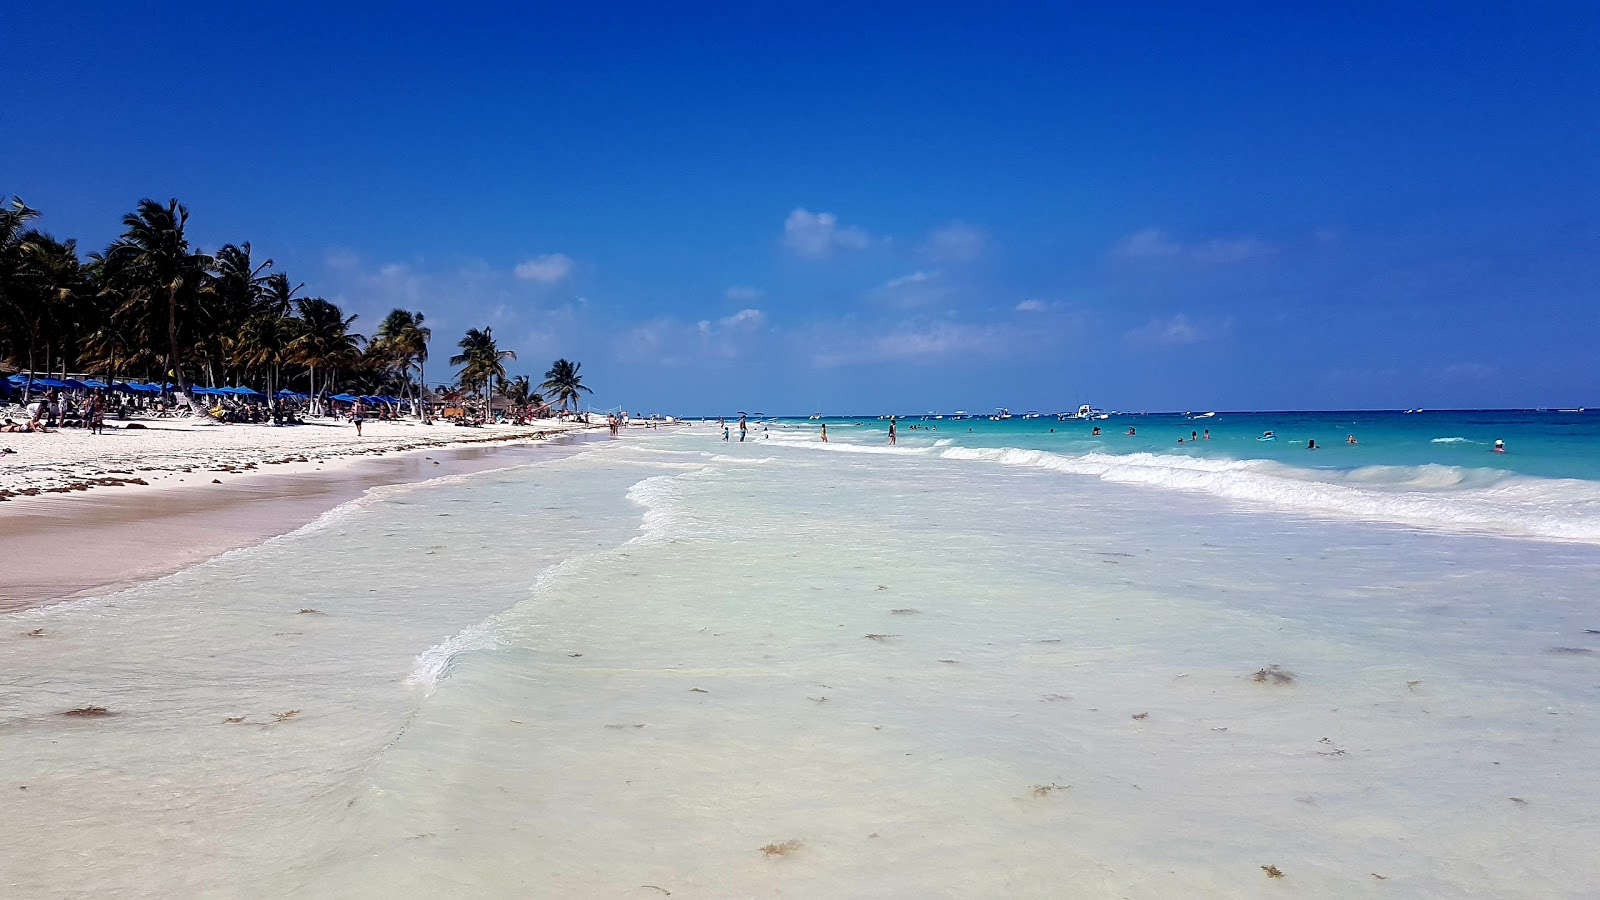 Playa Tulum'in fotoğrafı beyaz ince kum yüzey ile